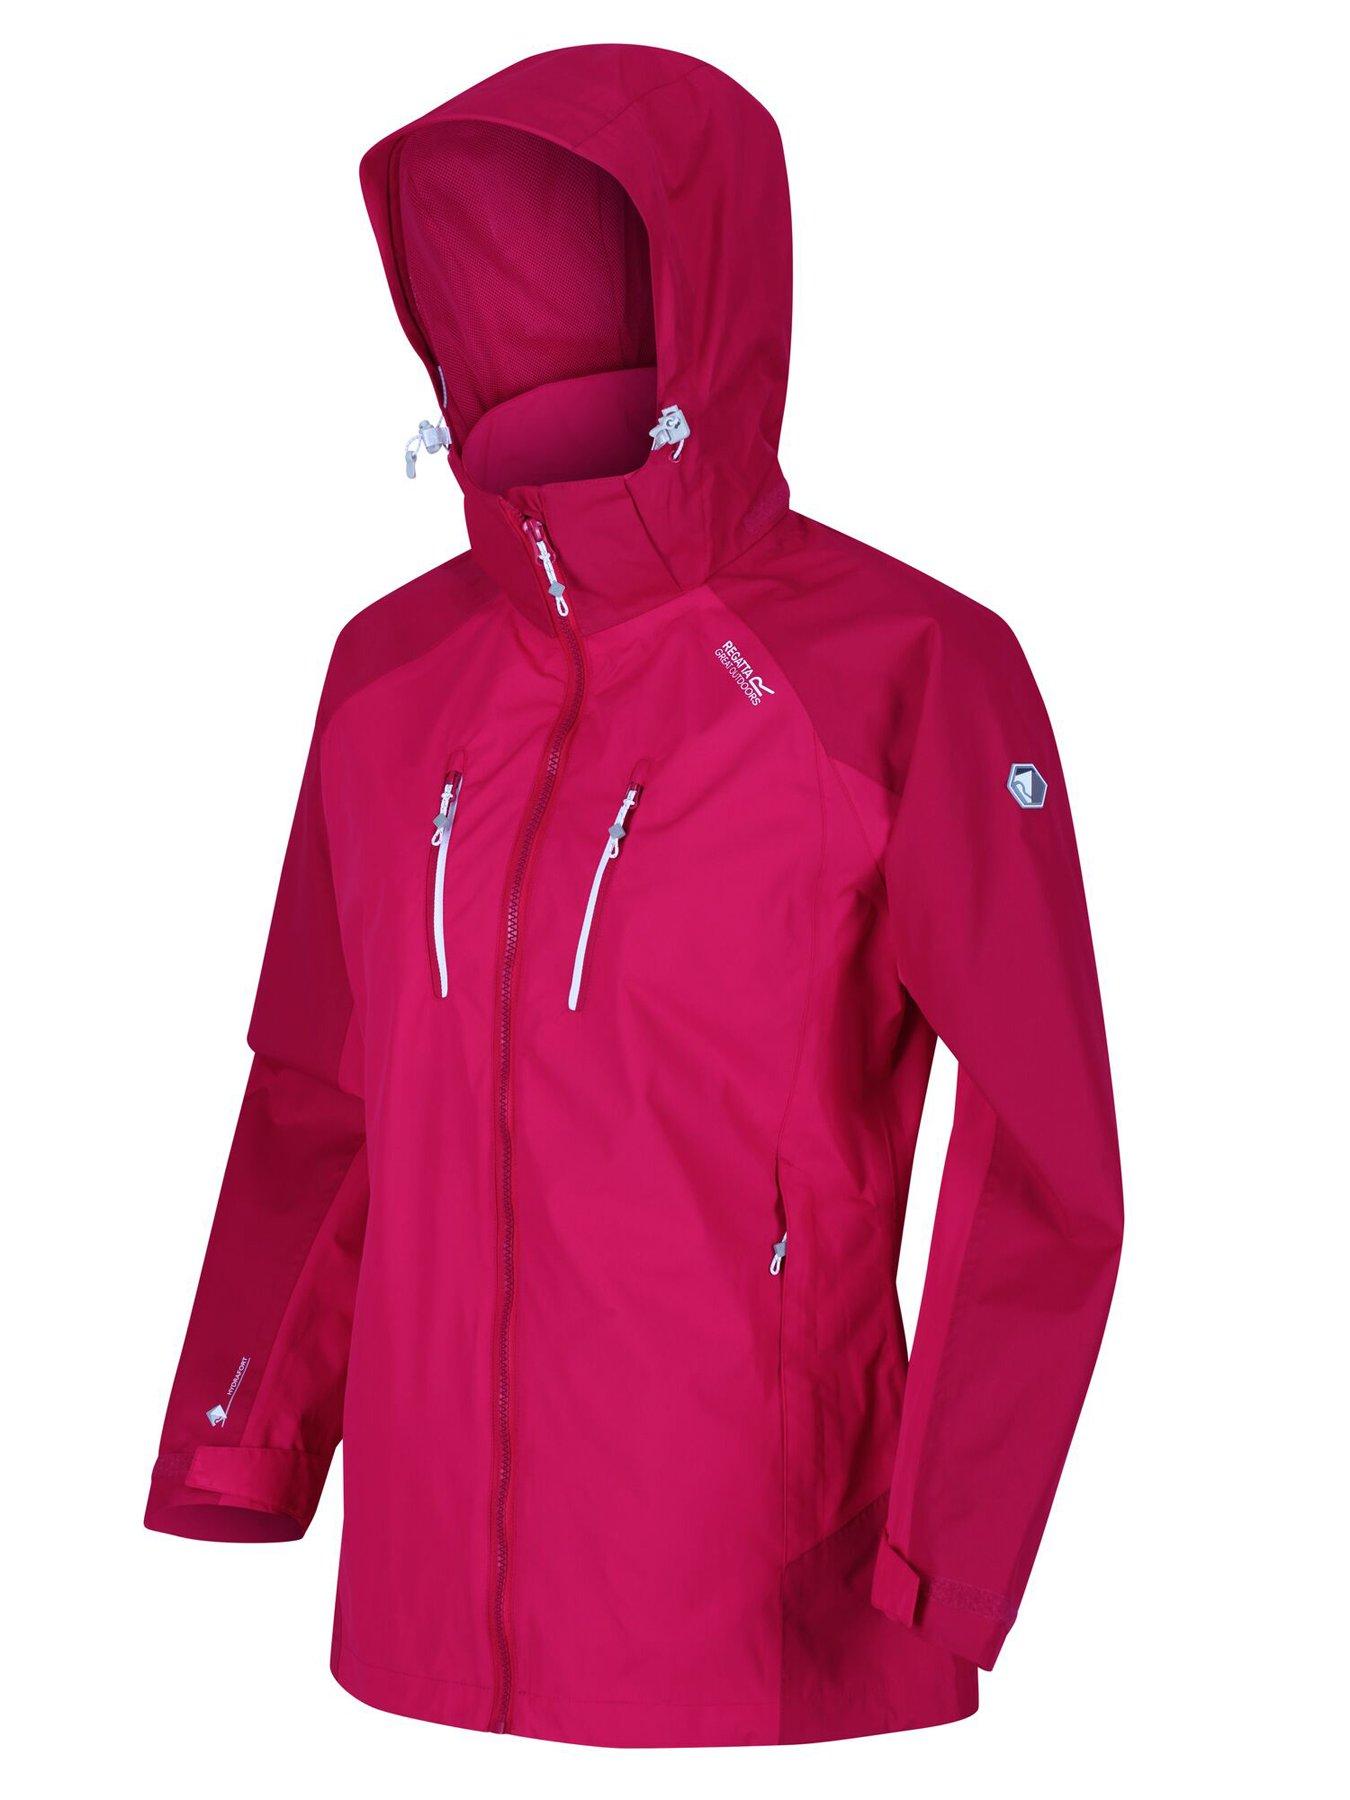  Calderdale Iv Waterproof Jacket